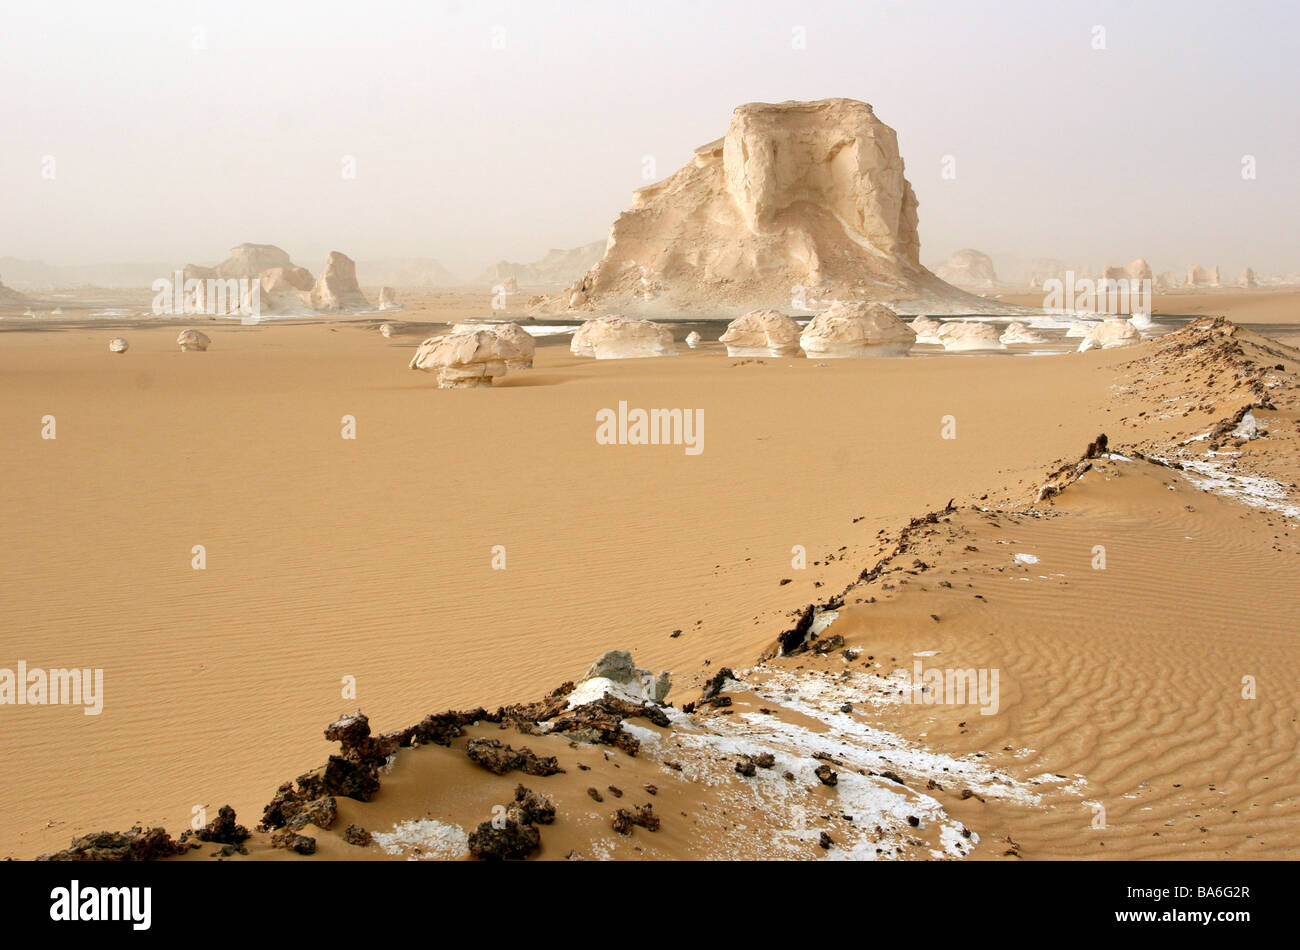 Ägypten-Libysche Wüste Felsformationen Natur Leben negativ Vegetation lose erhitzen Trockenheit staubigen sandigen weißen Wüste Felsen Stockfoto